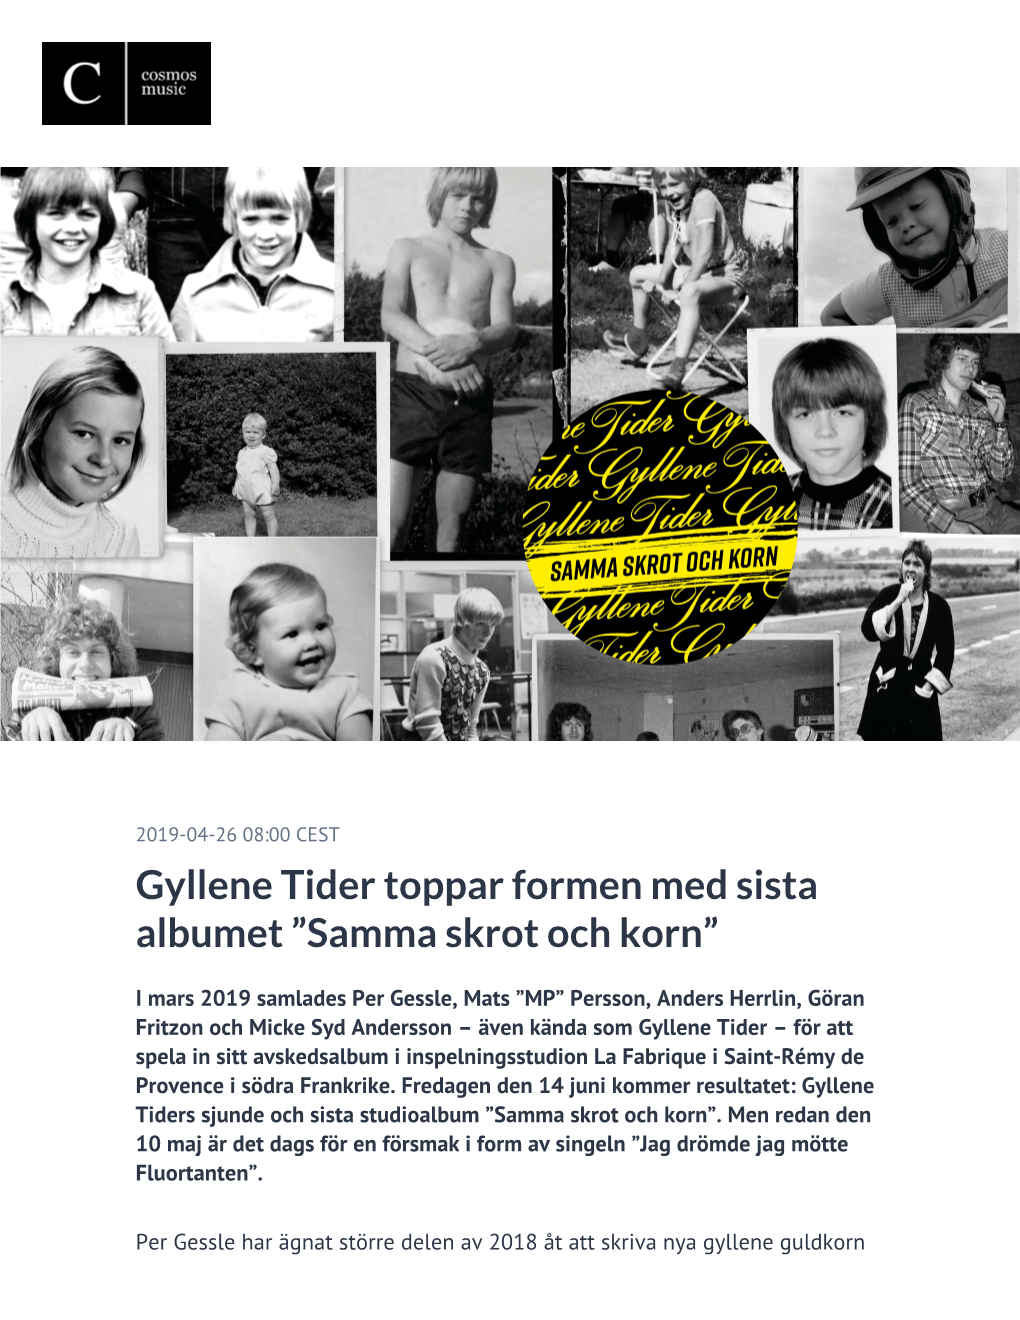 Gyllene Tider Toppar Formen Med Sista Albumet ”Samma Skrot Och Korn”